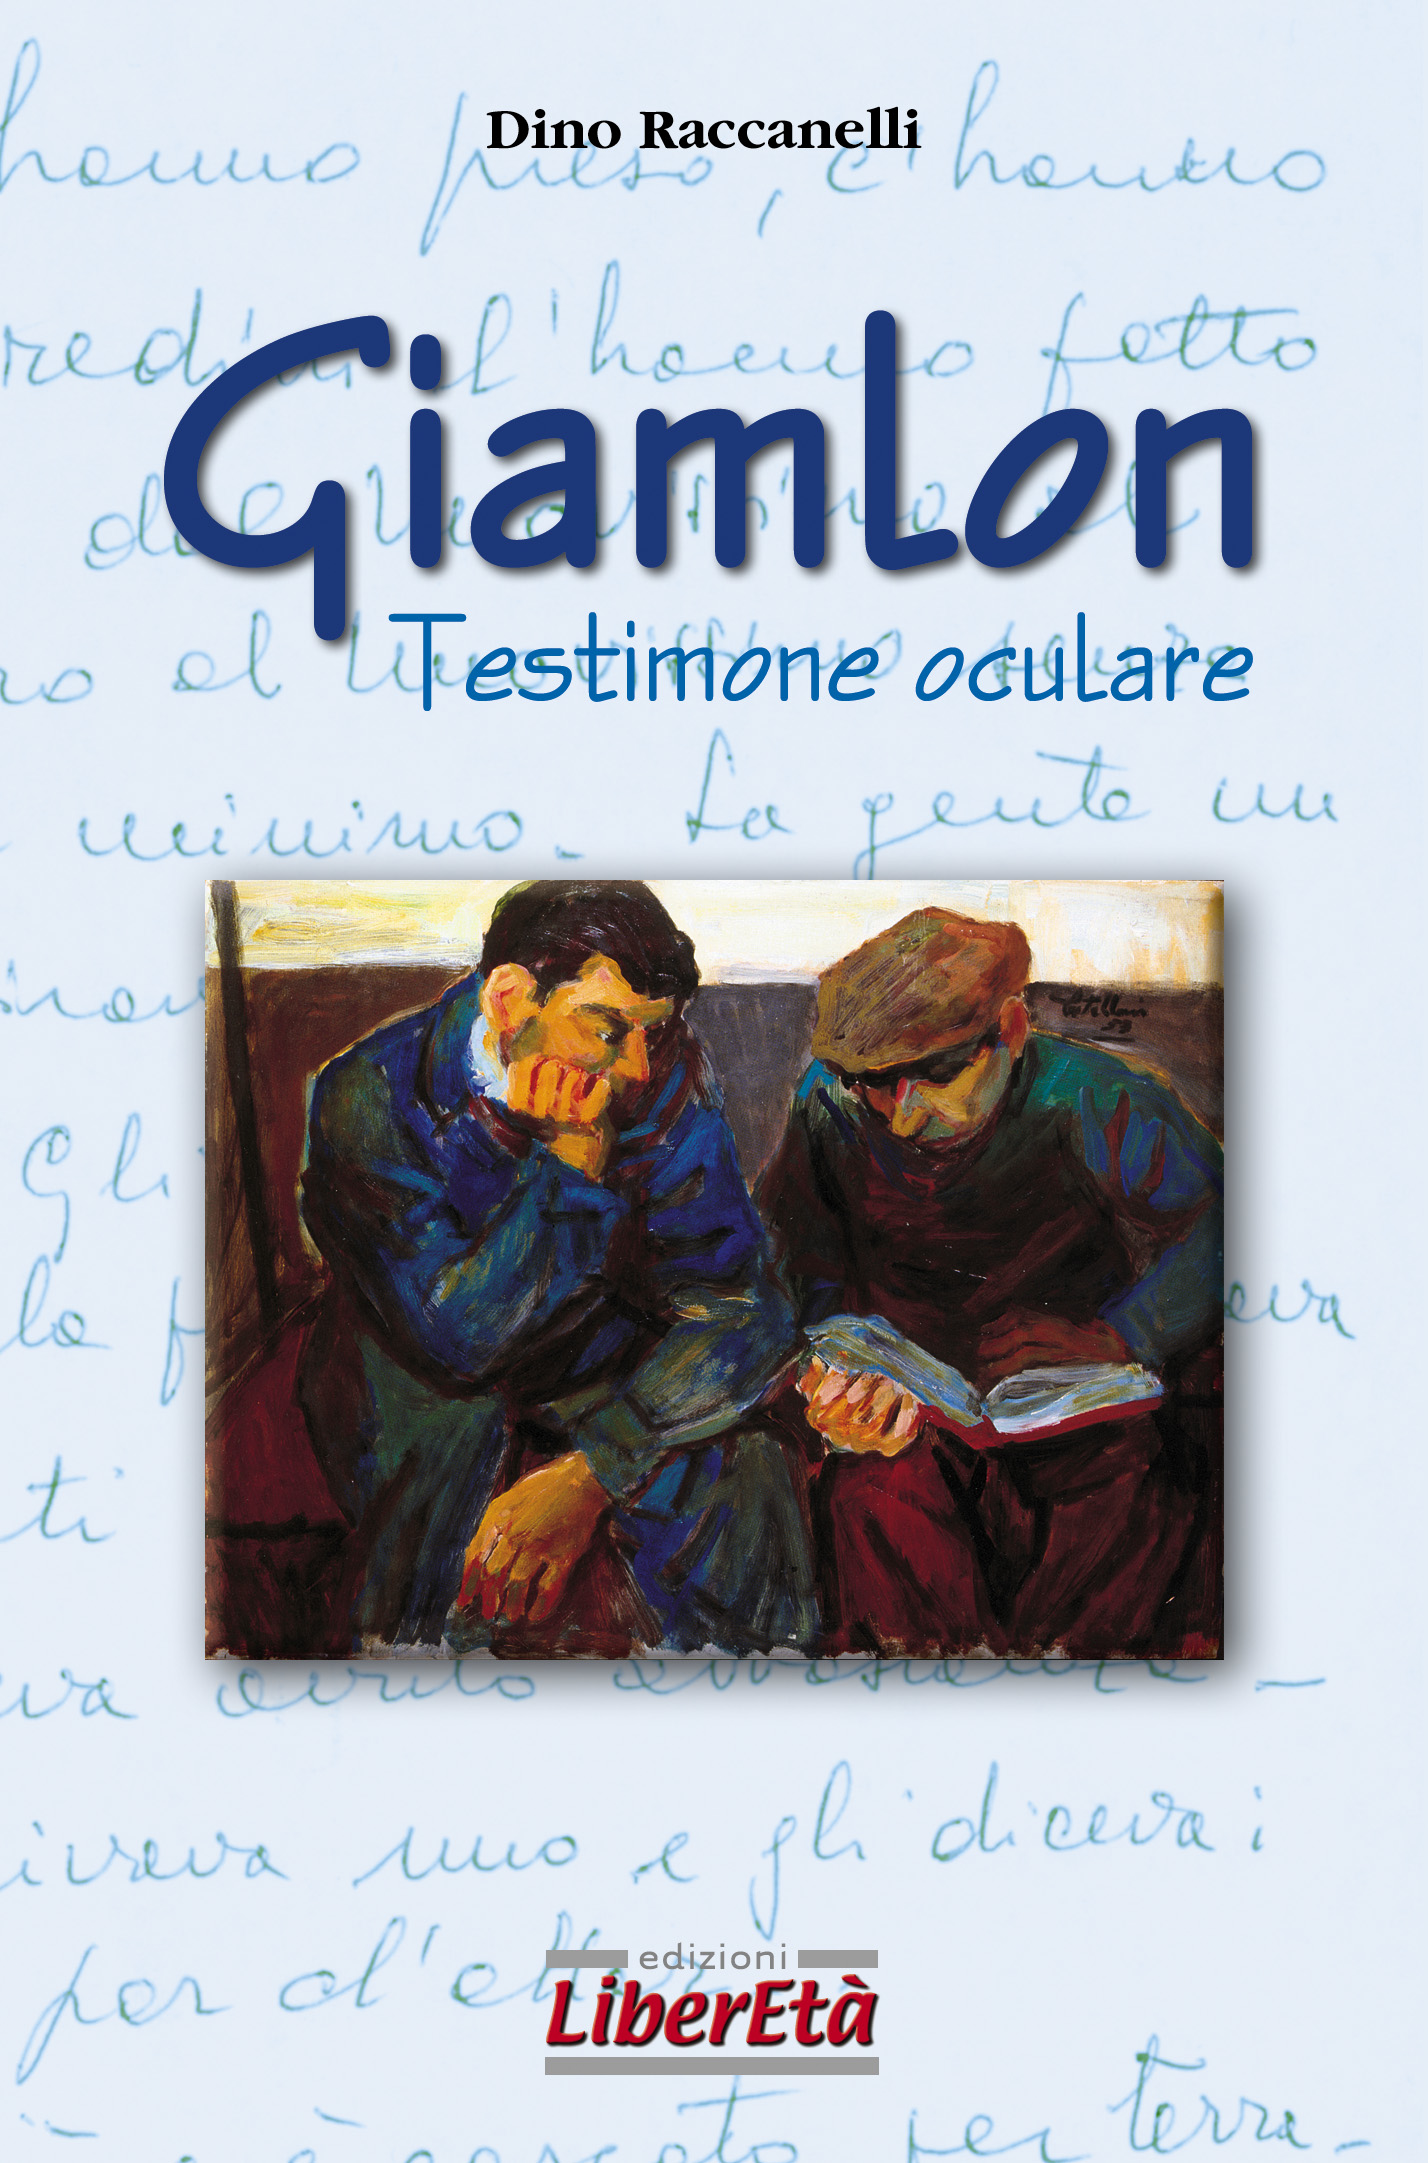 Giamlon